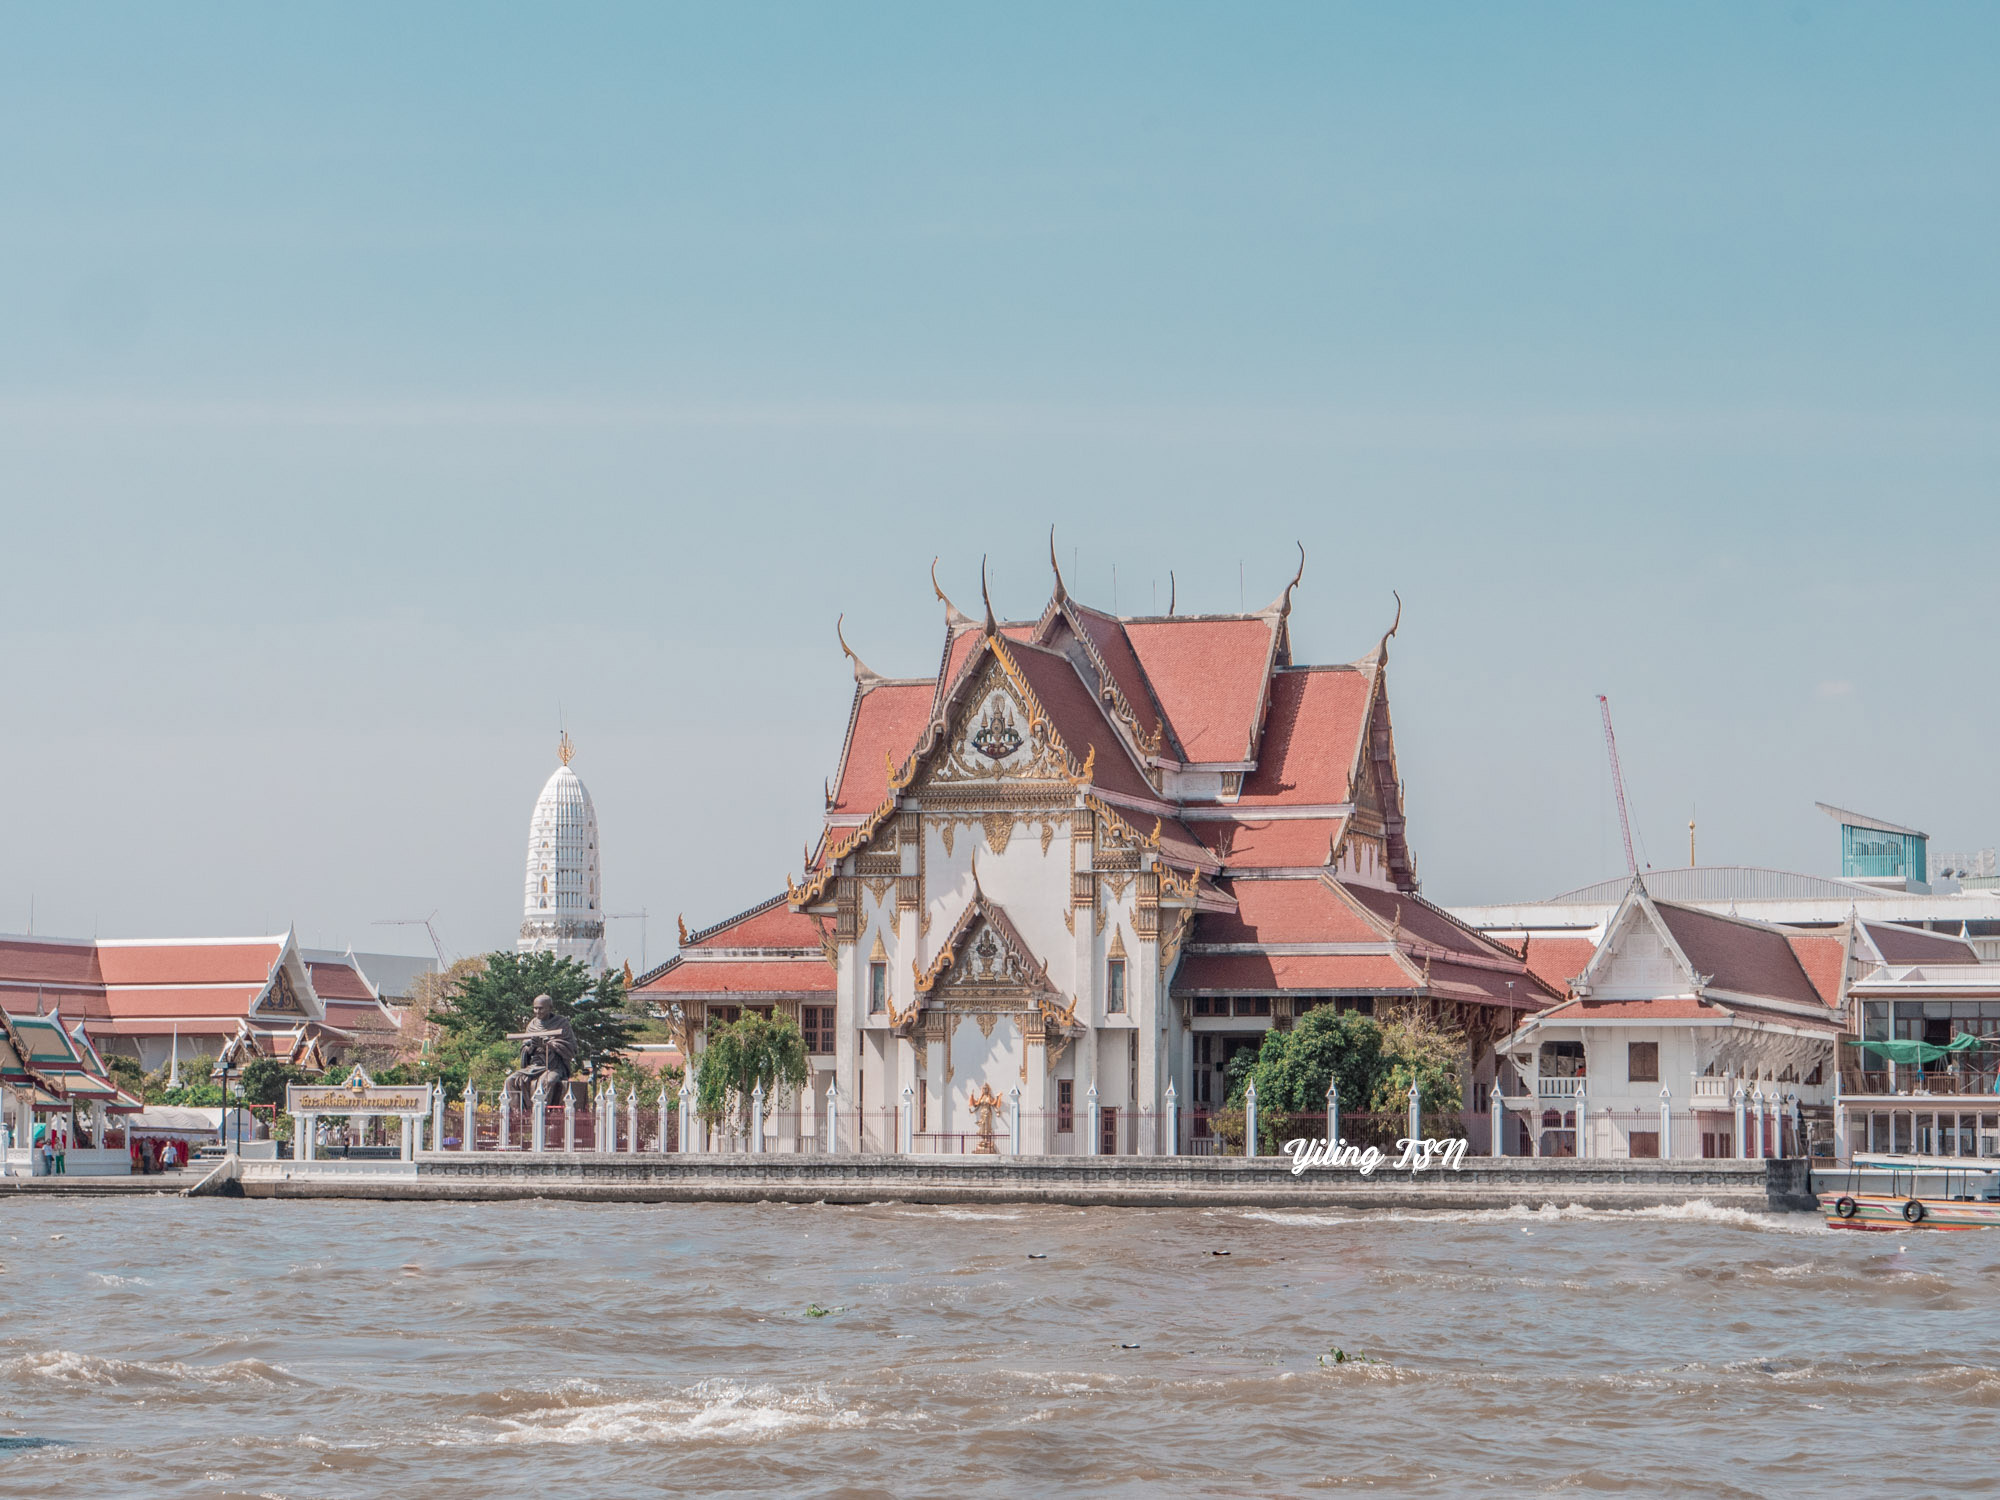 曼谷泰服體驗｜Sense Of Thai：租借價格、預約流程、心得評價，鄭王廟拍攝點推薦